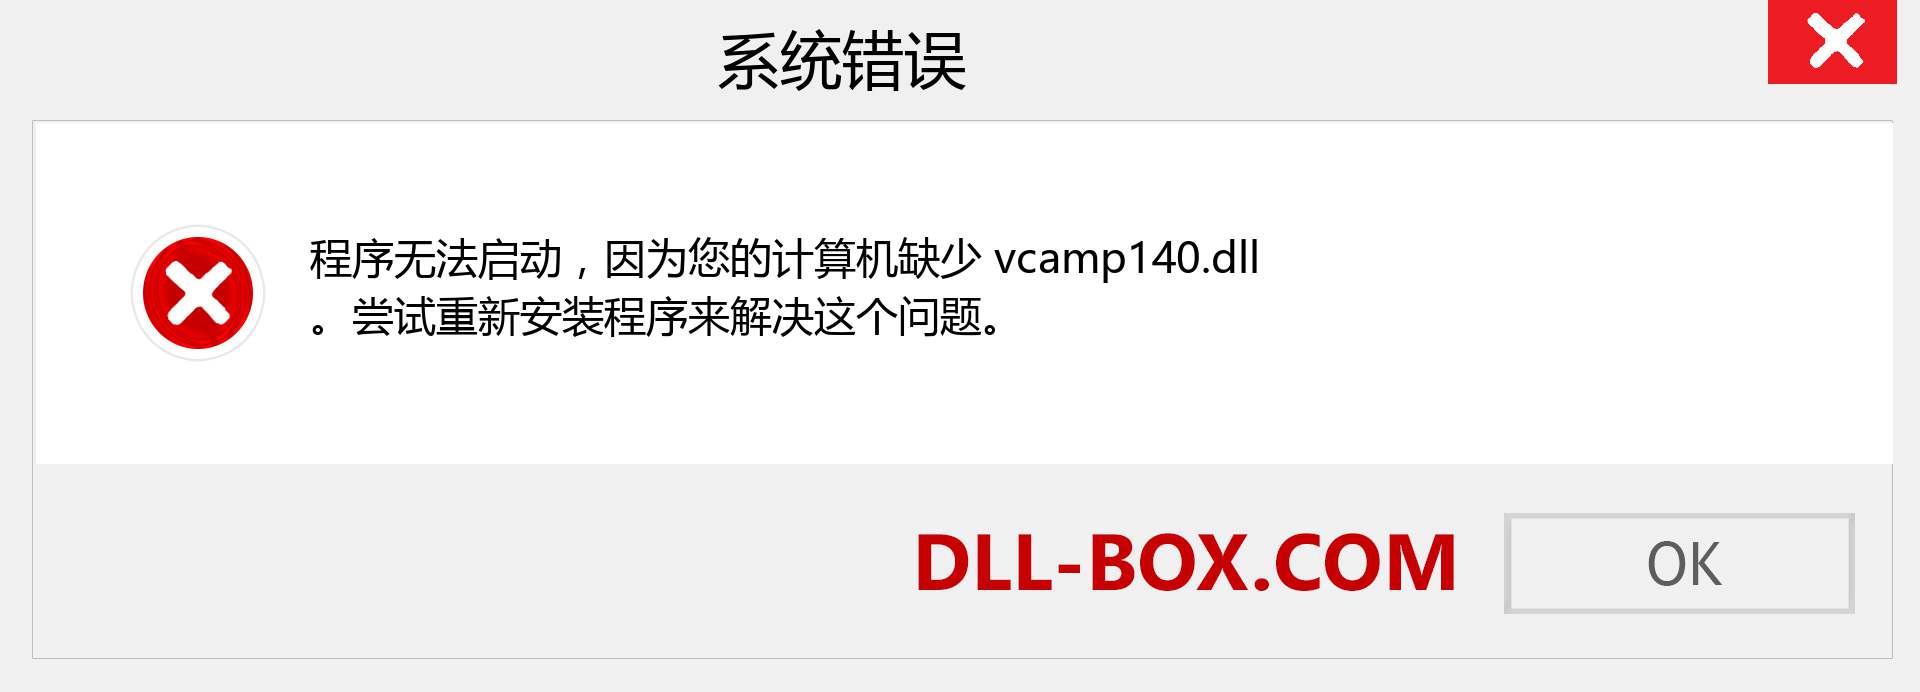 vcamp140.dll 文件丢失？。 适用于 Windows 7、8、10 的下载 - 修复 Windows、照片、图像上的 vcamp140 dll 丢失错误